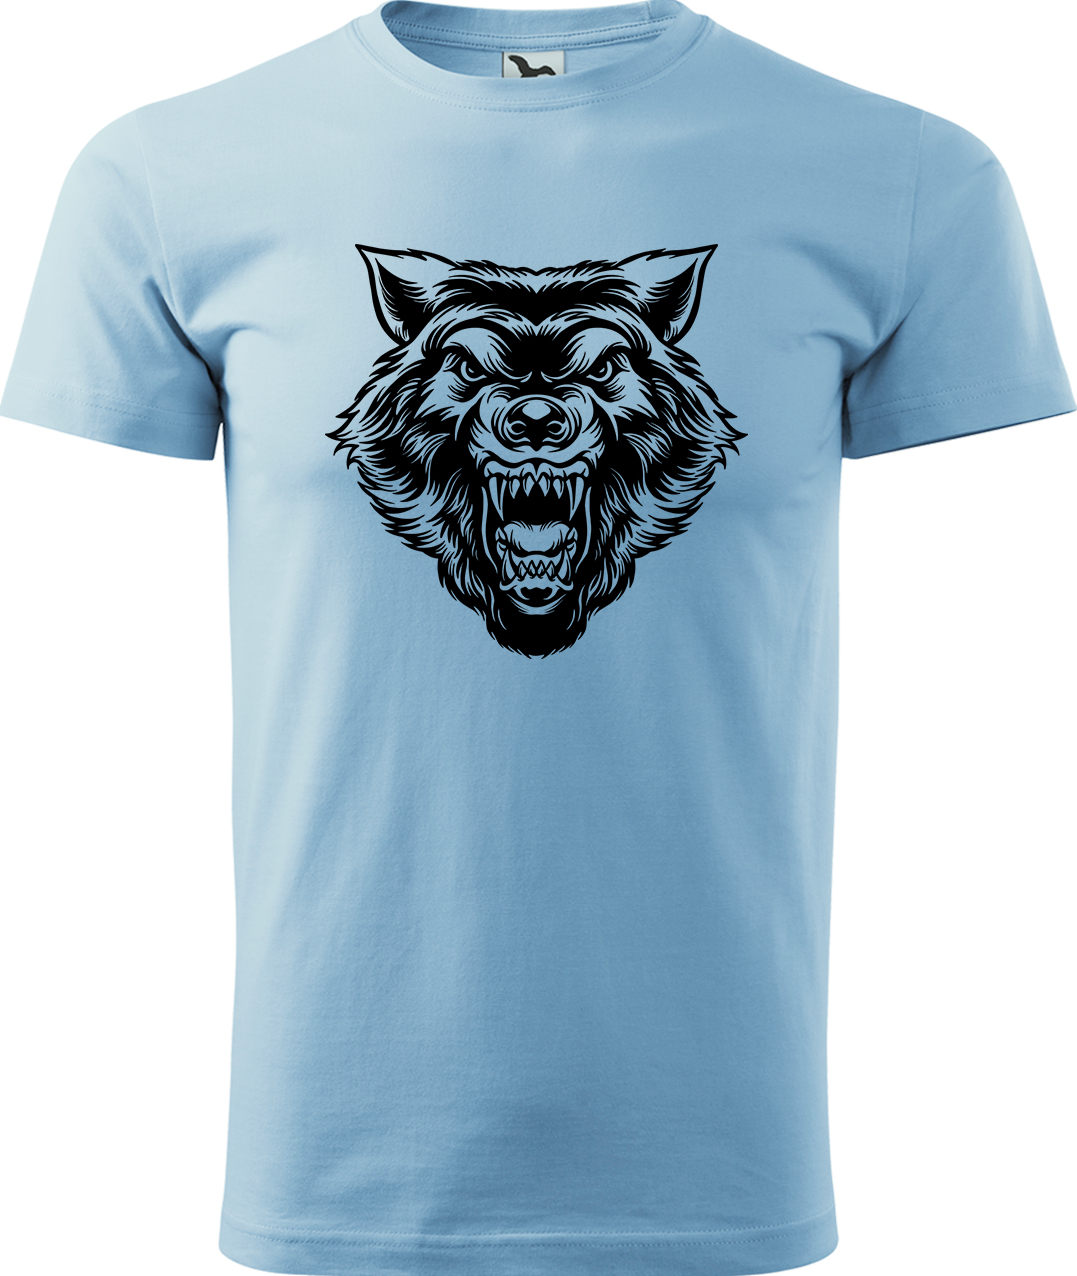 Pánské tričko s vlkem - Rozzuřený vlk Velikost: M, Barva: Nebesky modrá (15), Střih: pánský